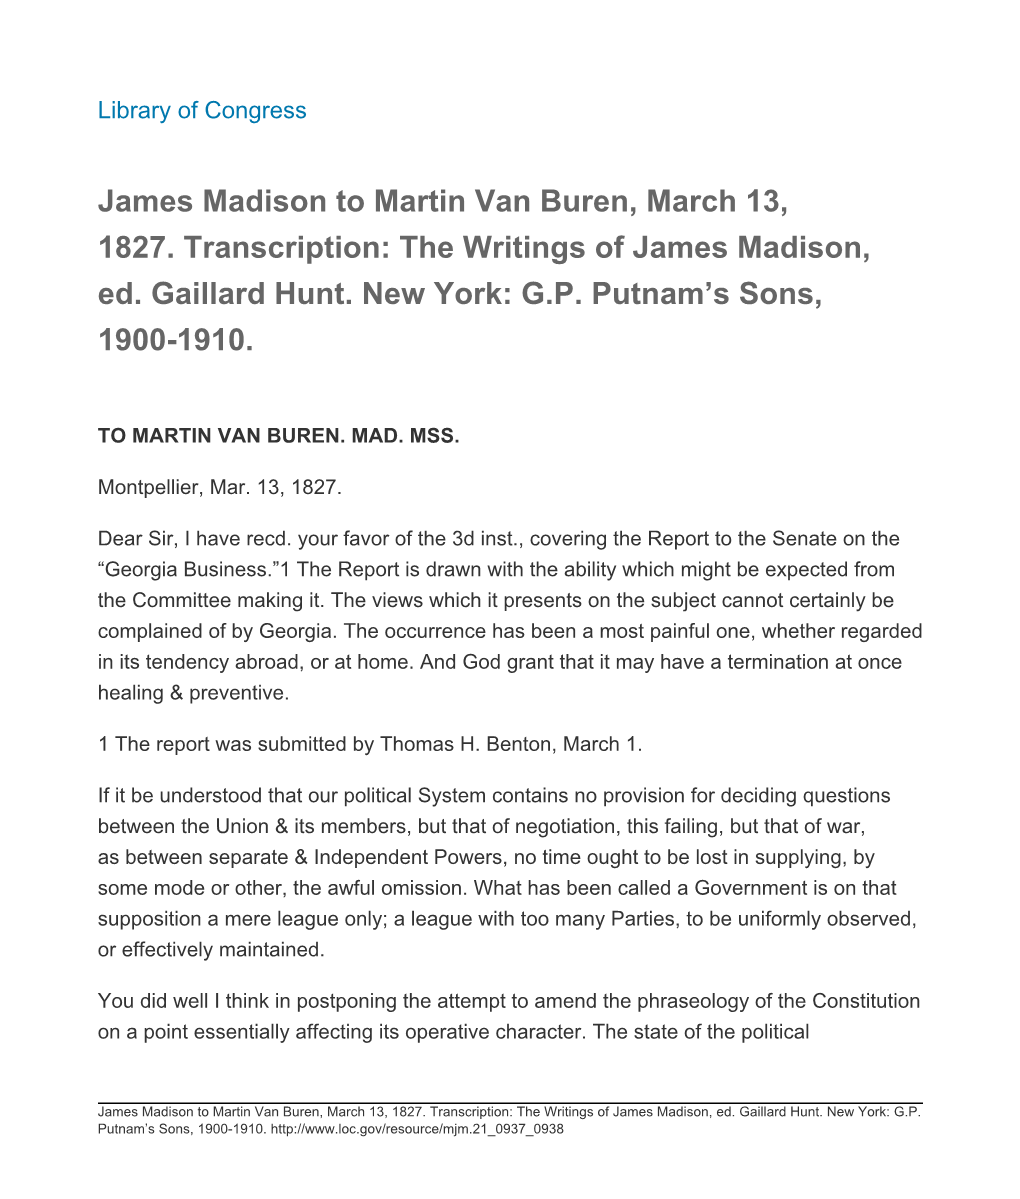 James Madison to Martin Van Buren, March 13, 1827